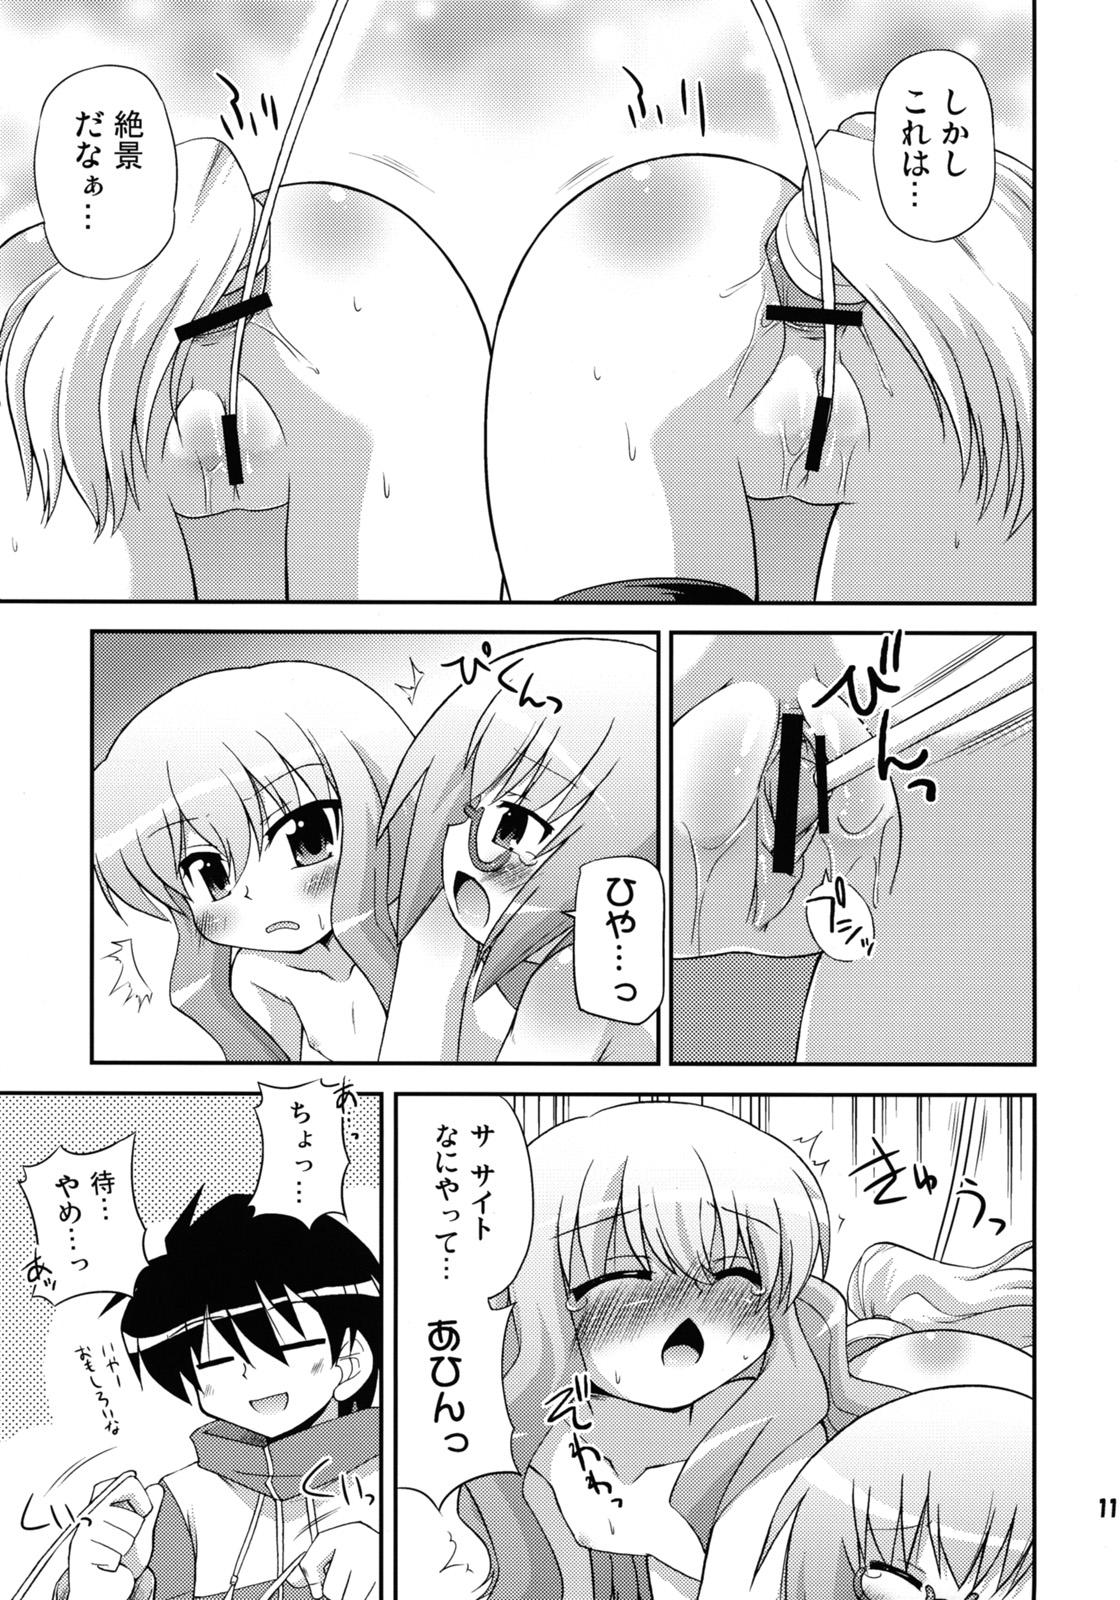 Super FLAT REVOLUTION - Zero no tsukaima Making Love Porn - Page 10